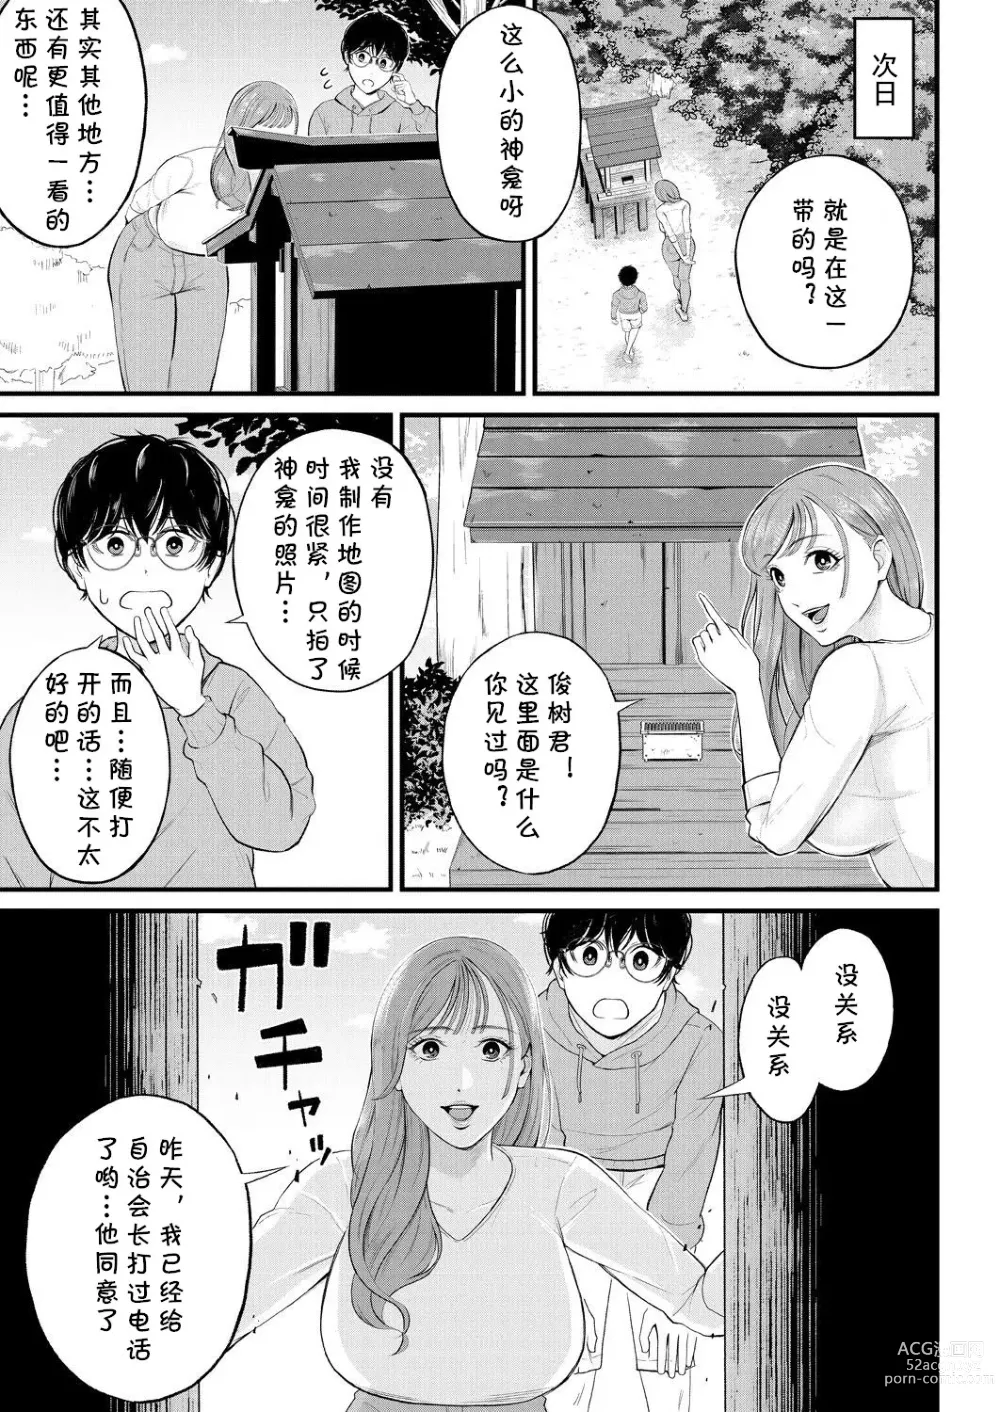 Page 7 of manga Kowaku no Field Work